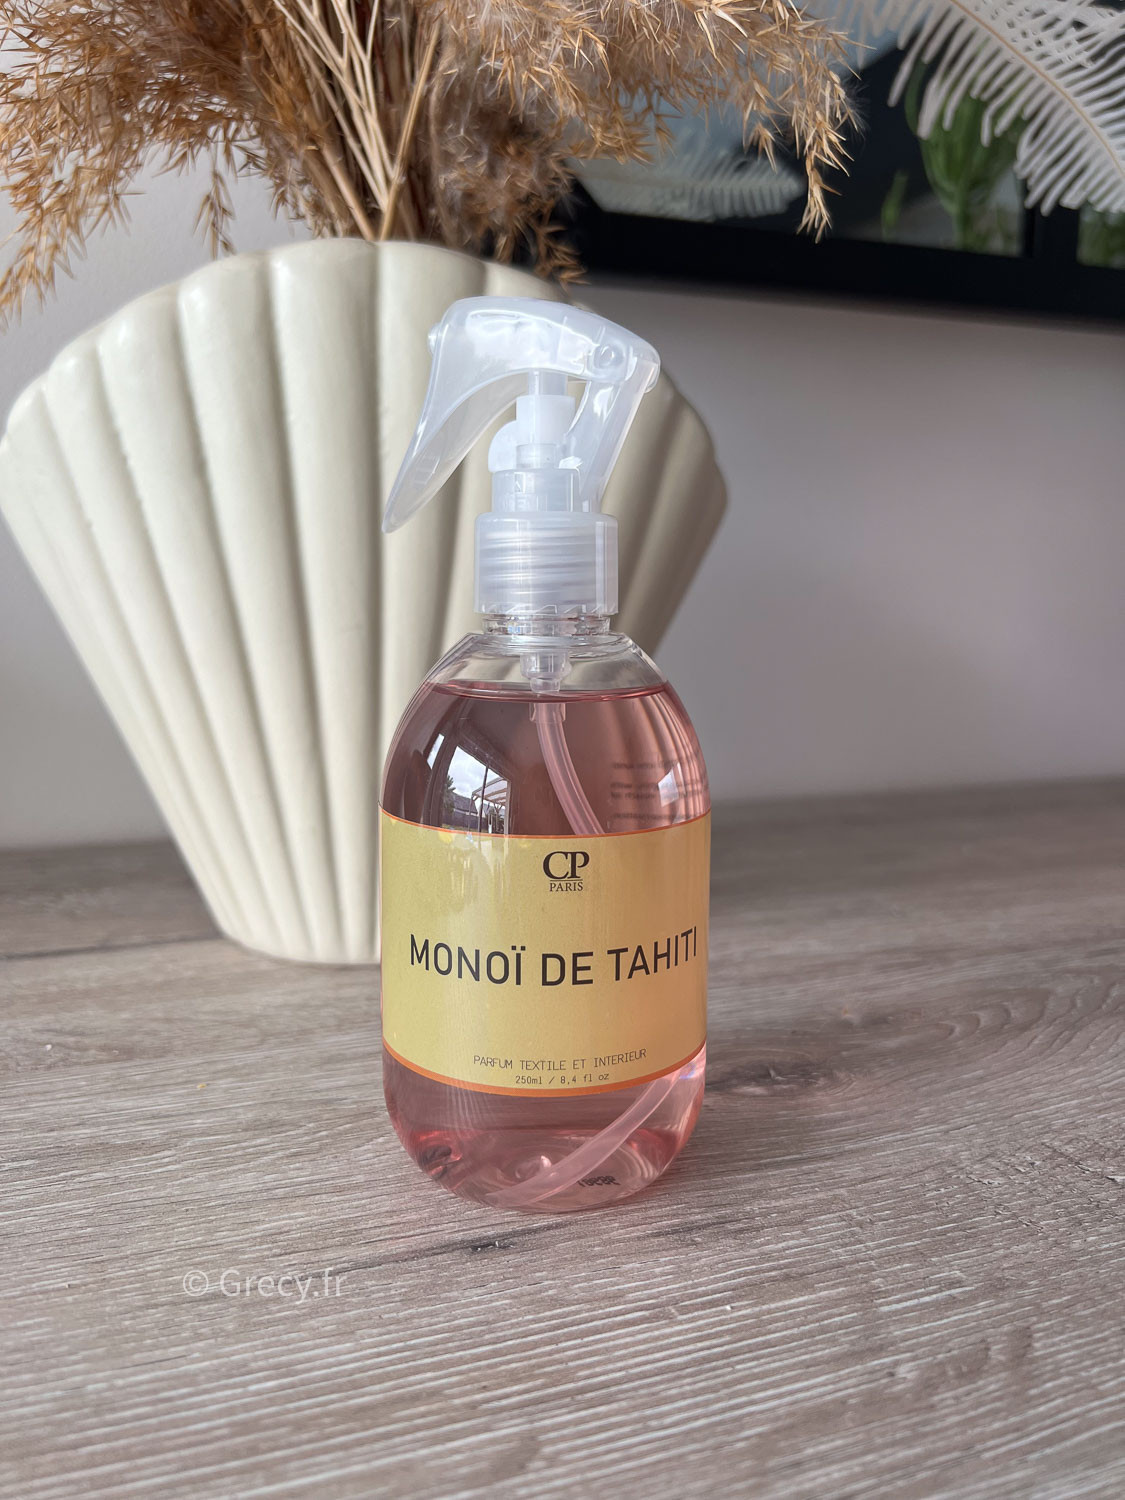 Parfum textile et intérieur au Monoï de Tahiti 250ml accessoire